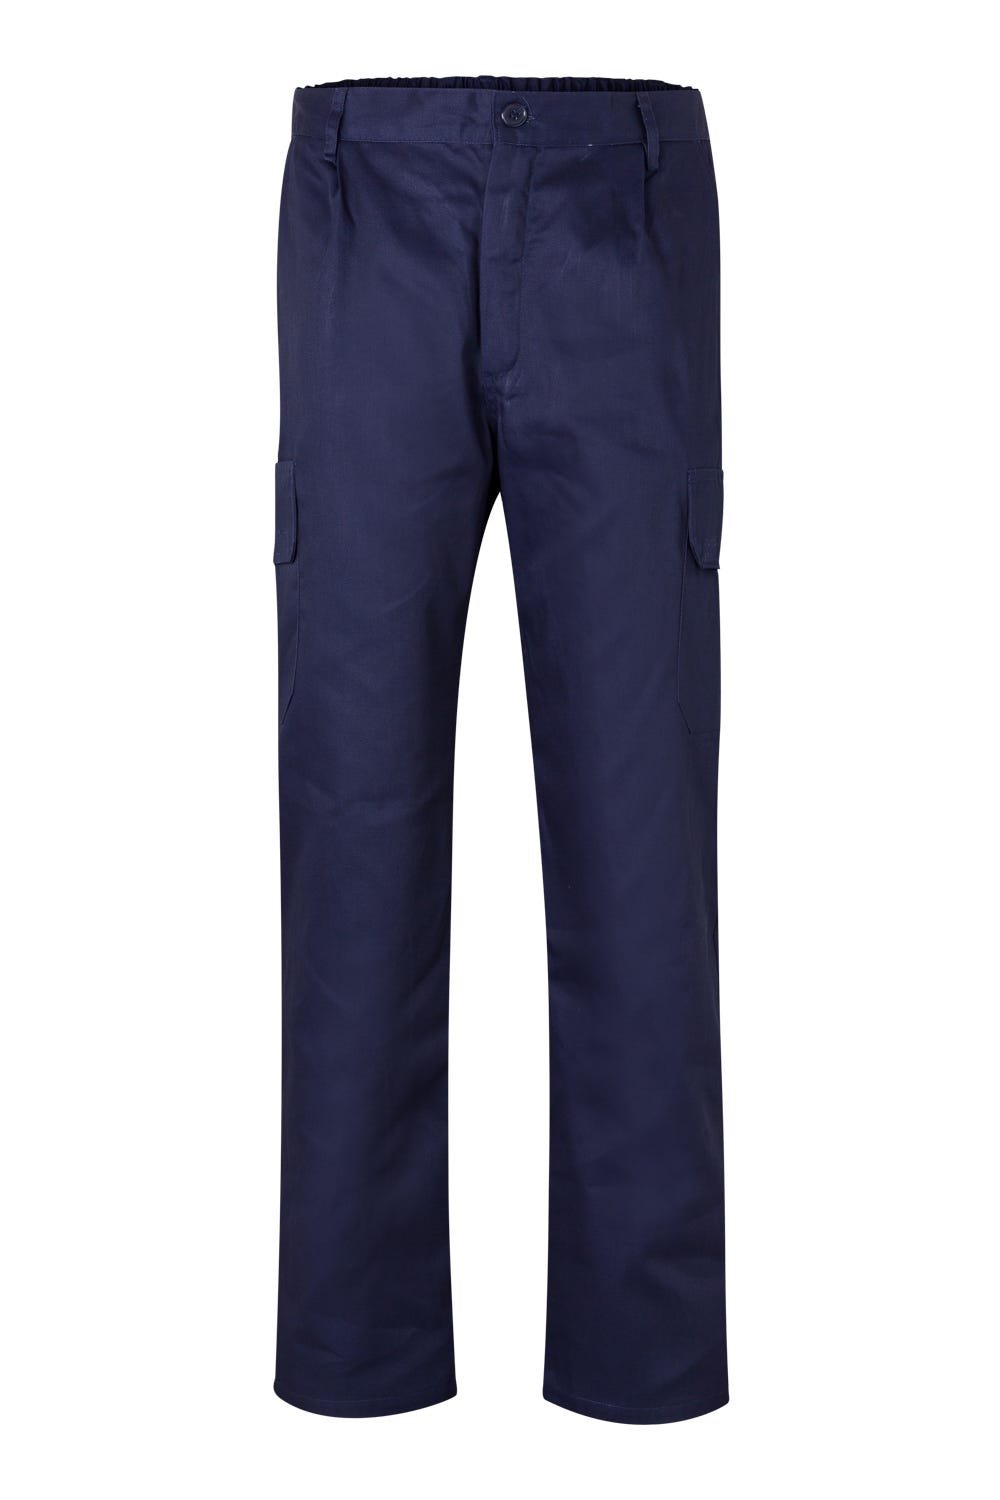 Pantalón de trabajo invierno gris con forro interior - Velilla 103006